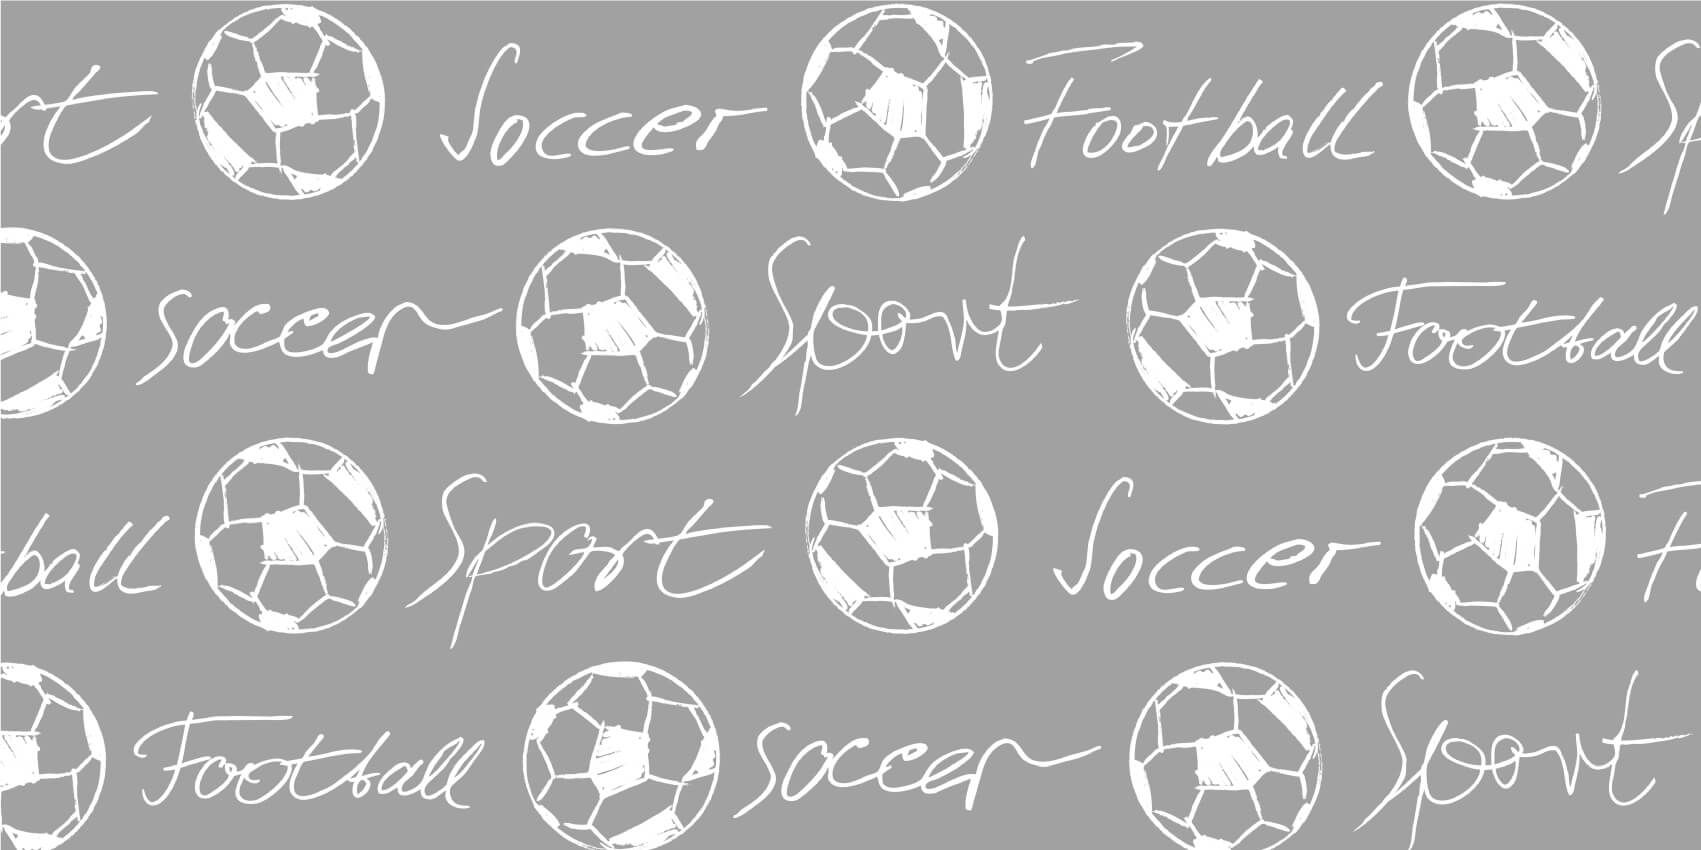 Football - Voetballen en tekst - Kinderkamer